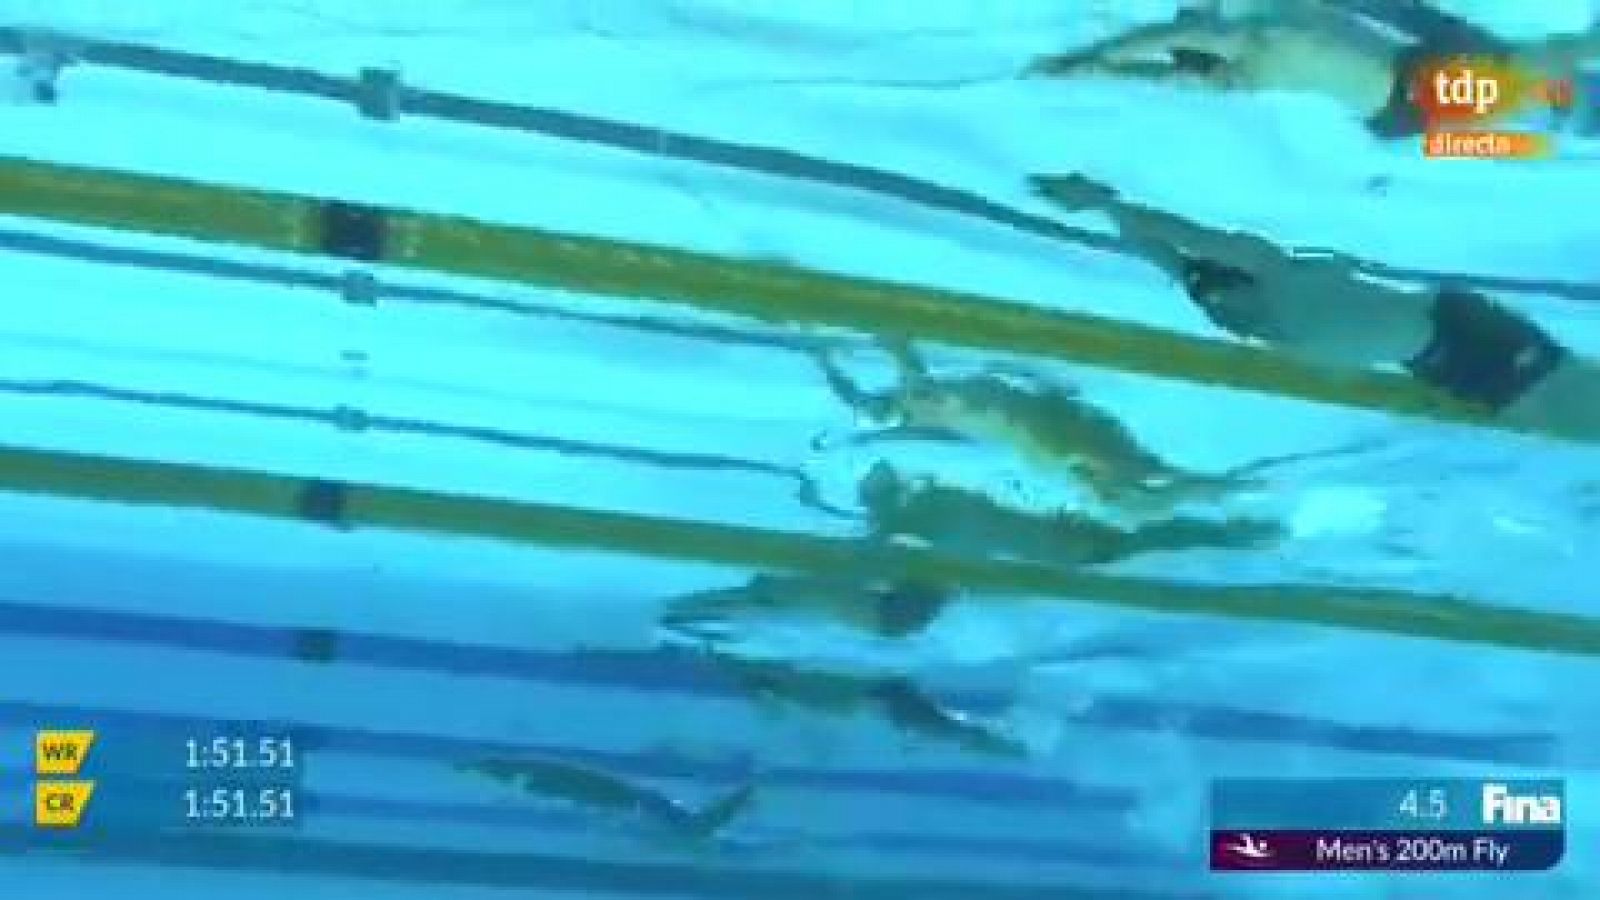 Mundial Natación | Milak bate el récord de Phelps de 200 mariposa - RTVE.es